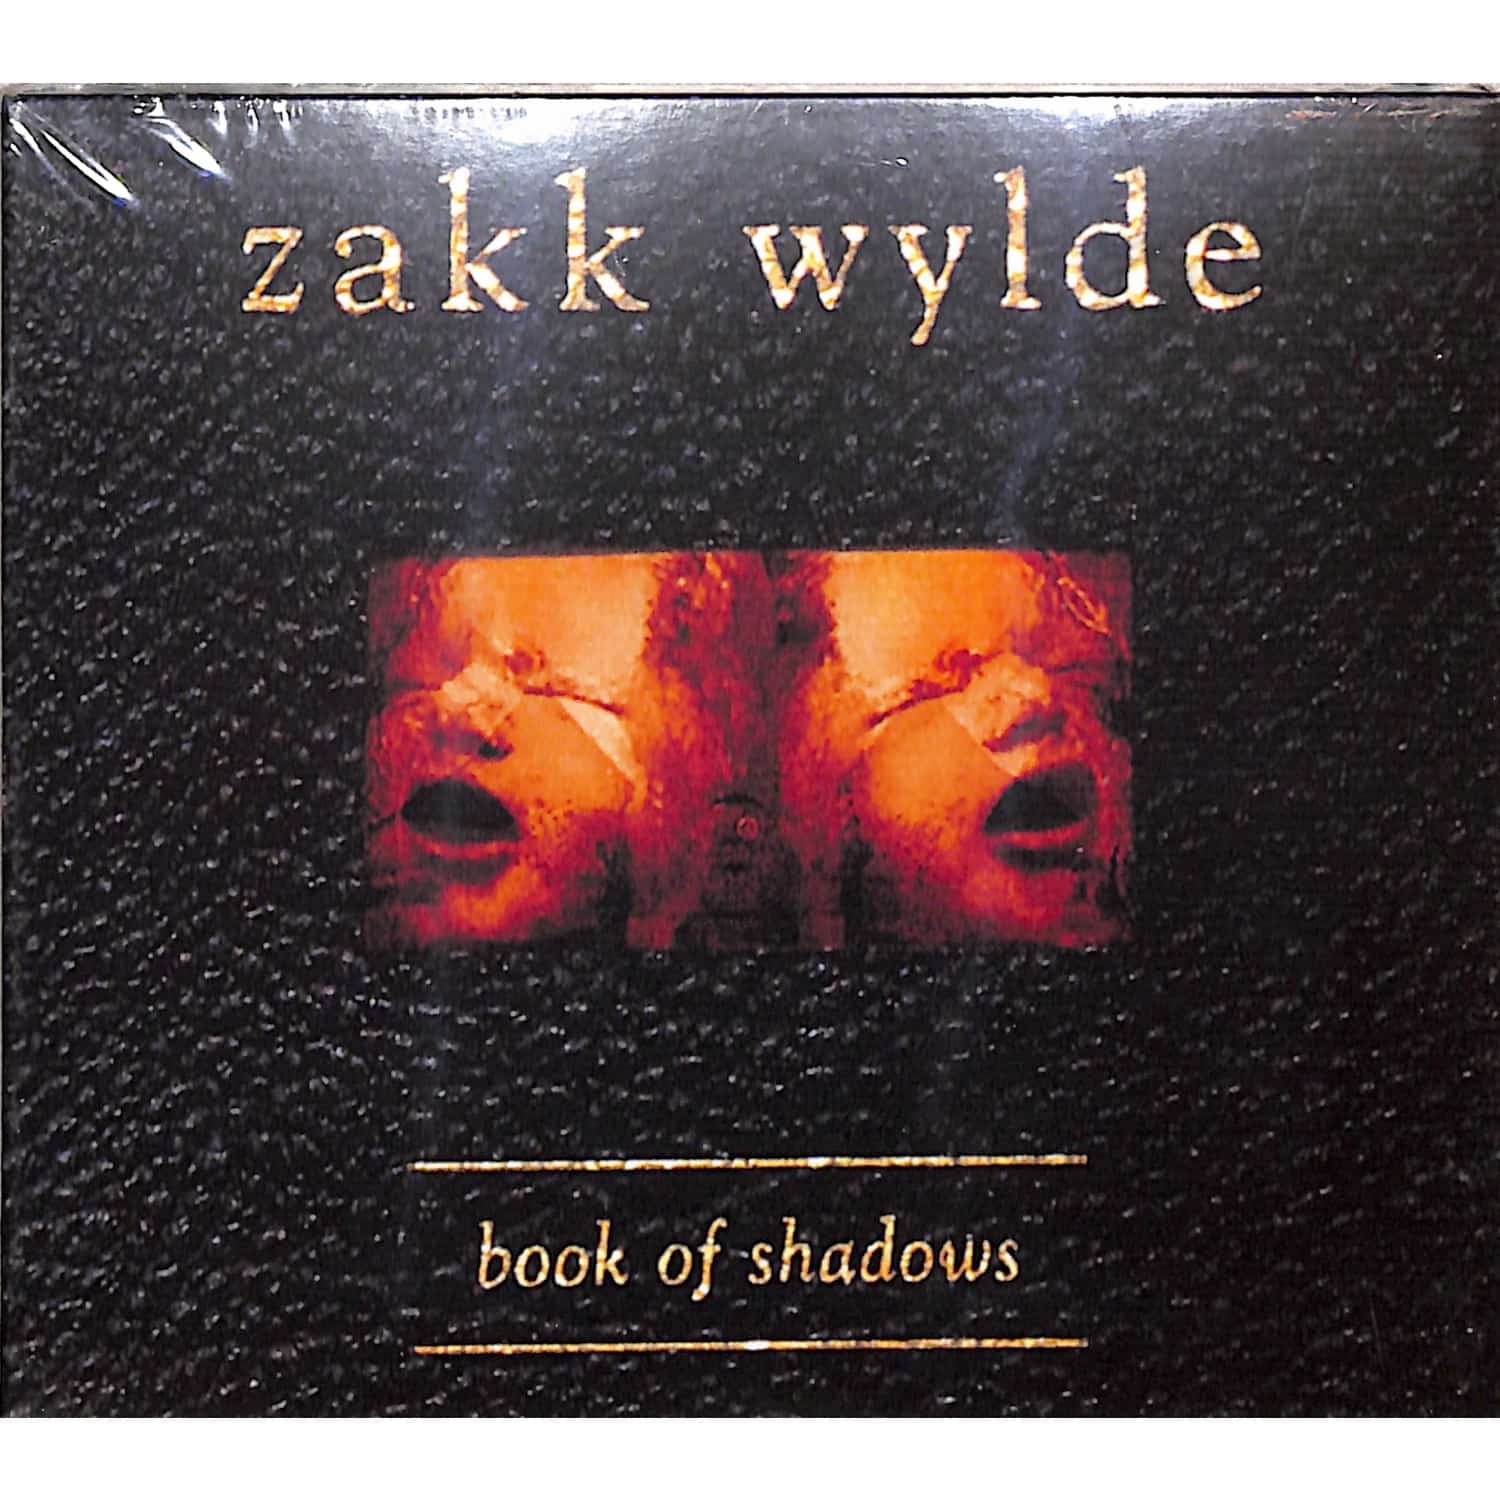 Zakk Wylde - BOOK OF SHADOWS 